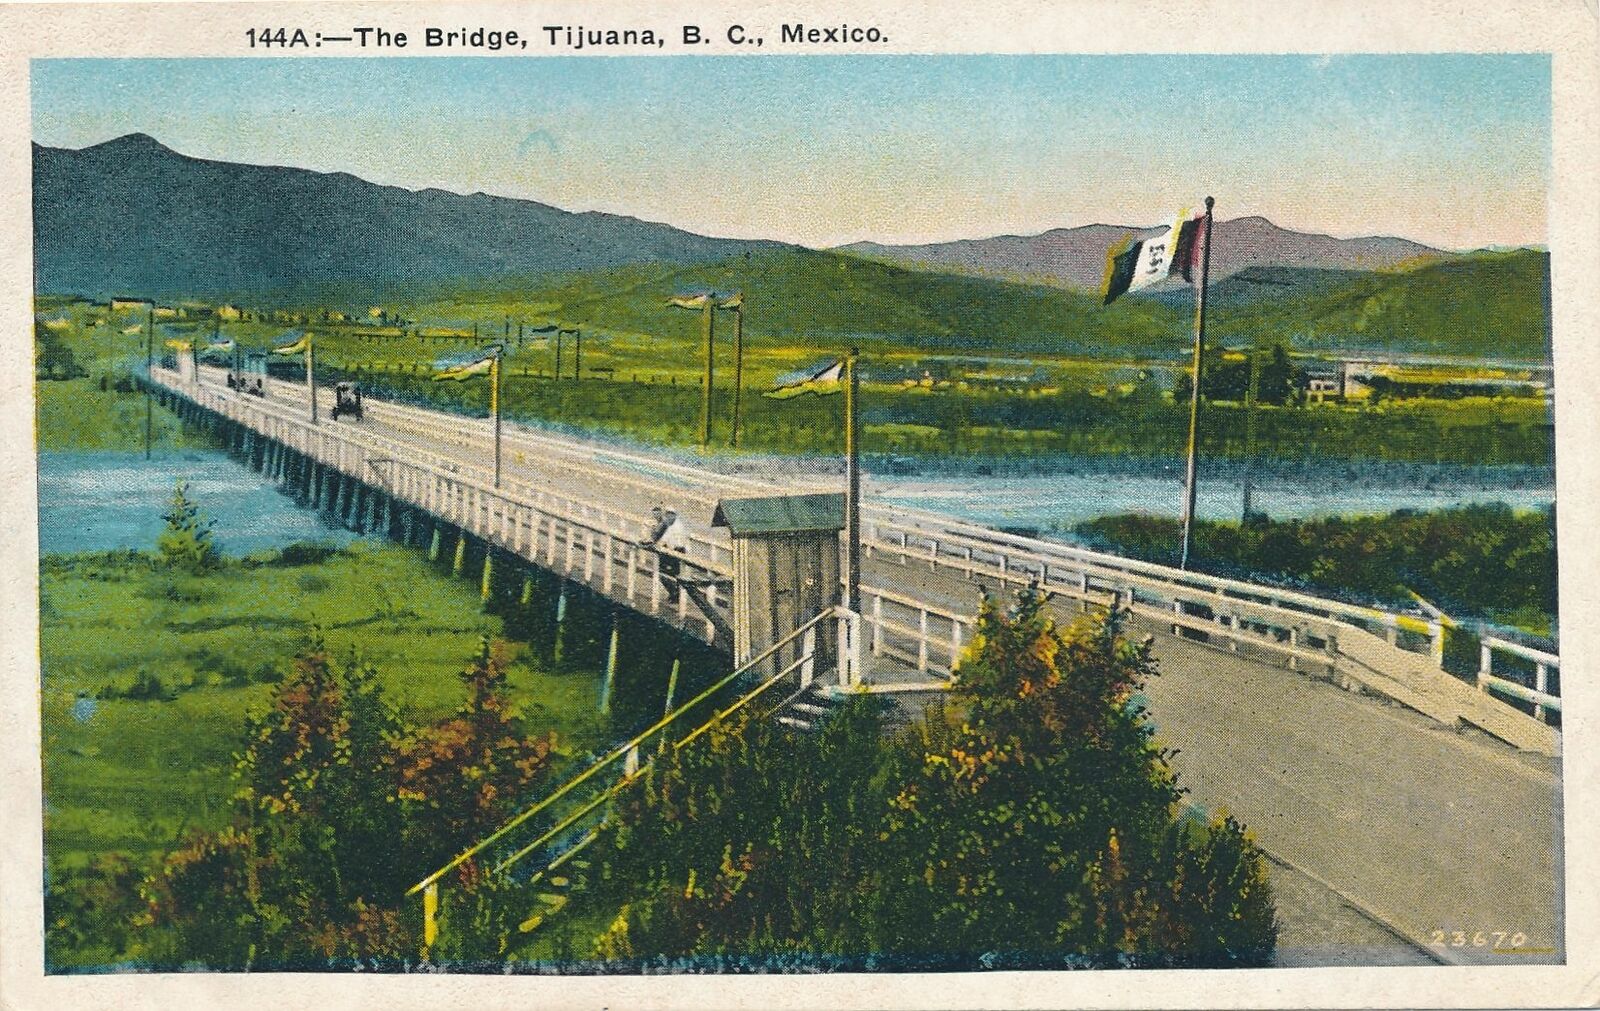 TIJUANA - The Bridge - Mexico